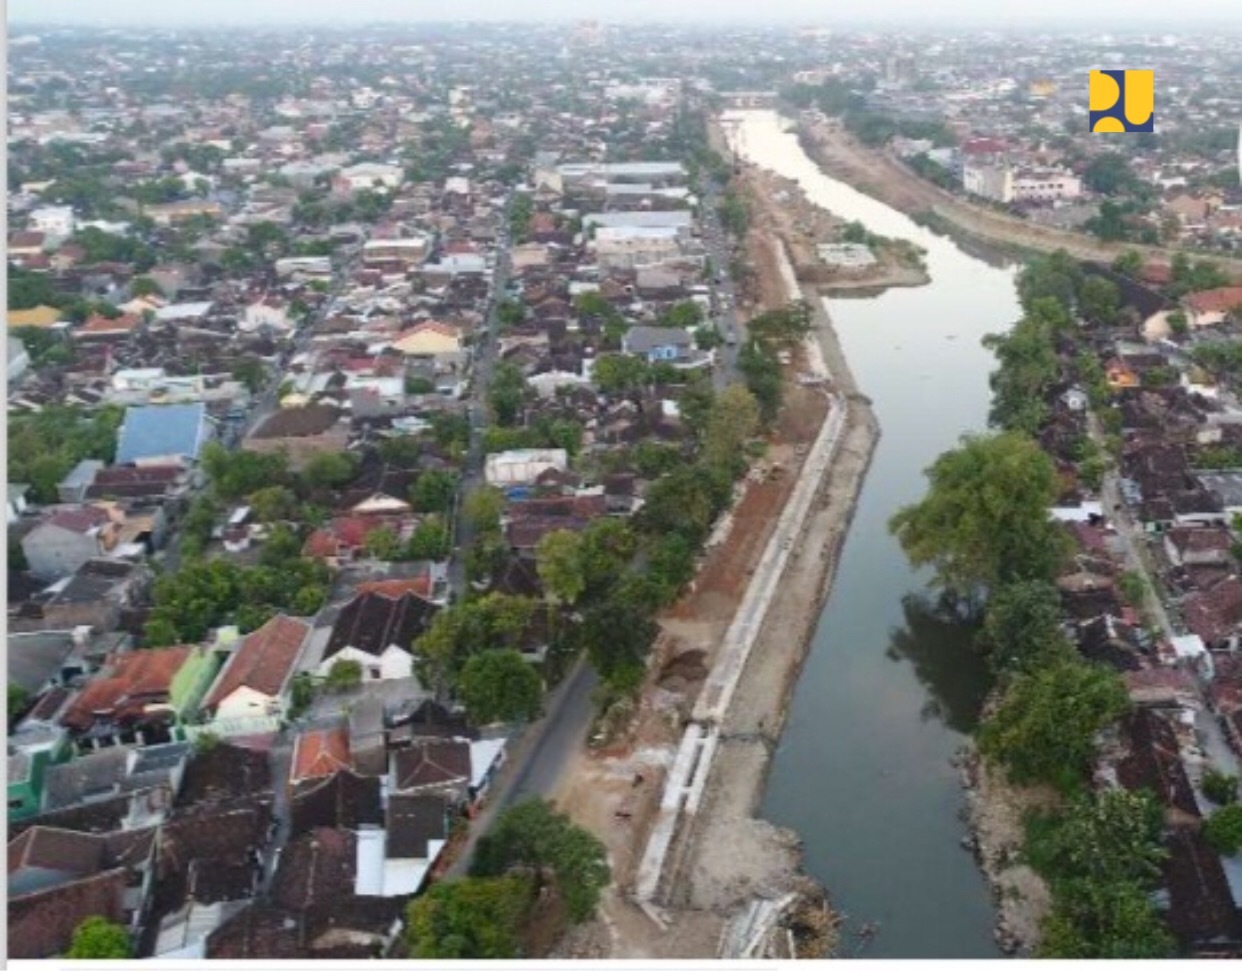 Kementerian Pekerjaan Umum dan Perumahan Rakyat (PUPR) tengah menyelesaikan normalisasi Kali Pepe sebagai salah satu upaya pengendalian banjir Kota Solo. ( Foto: Dok. PUPR)